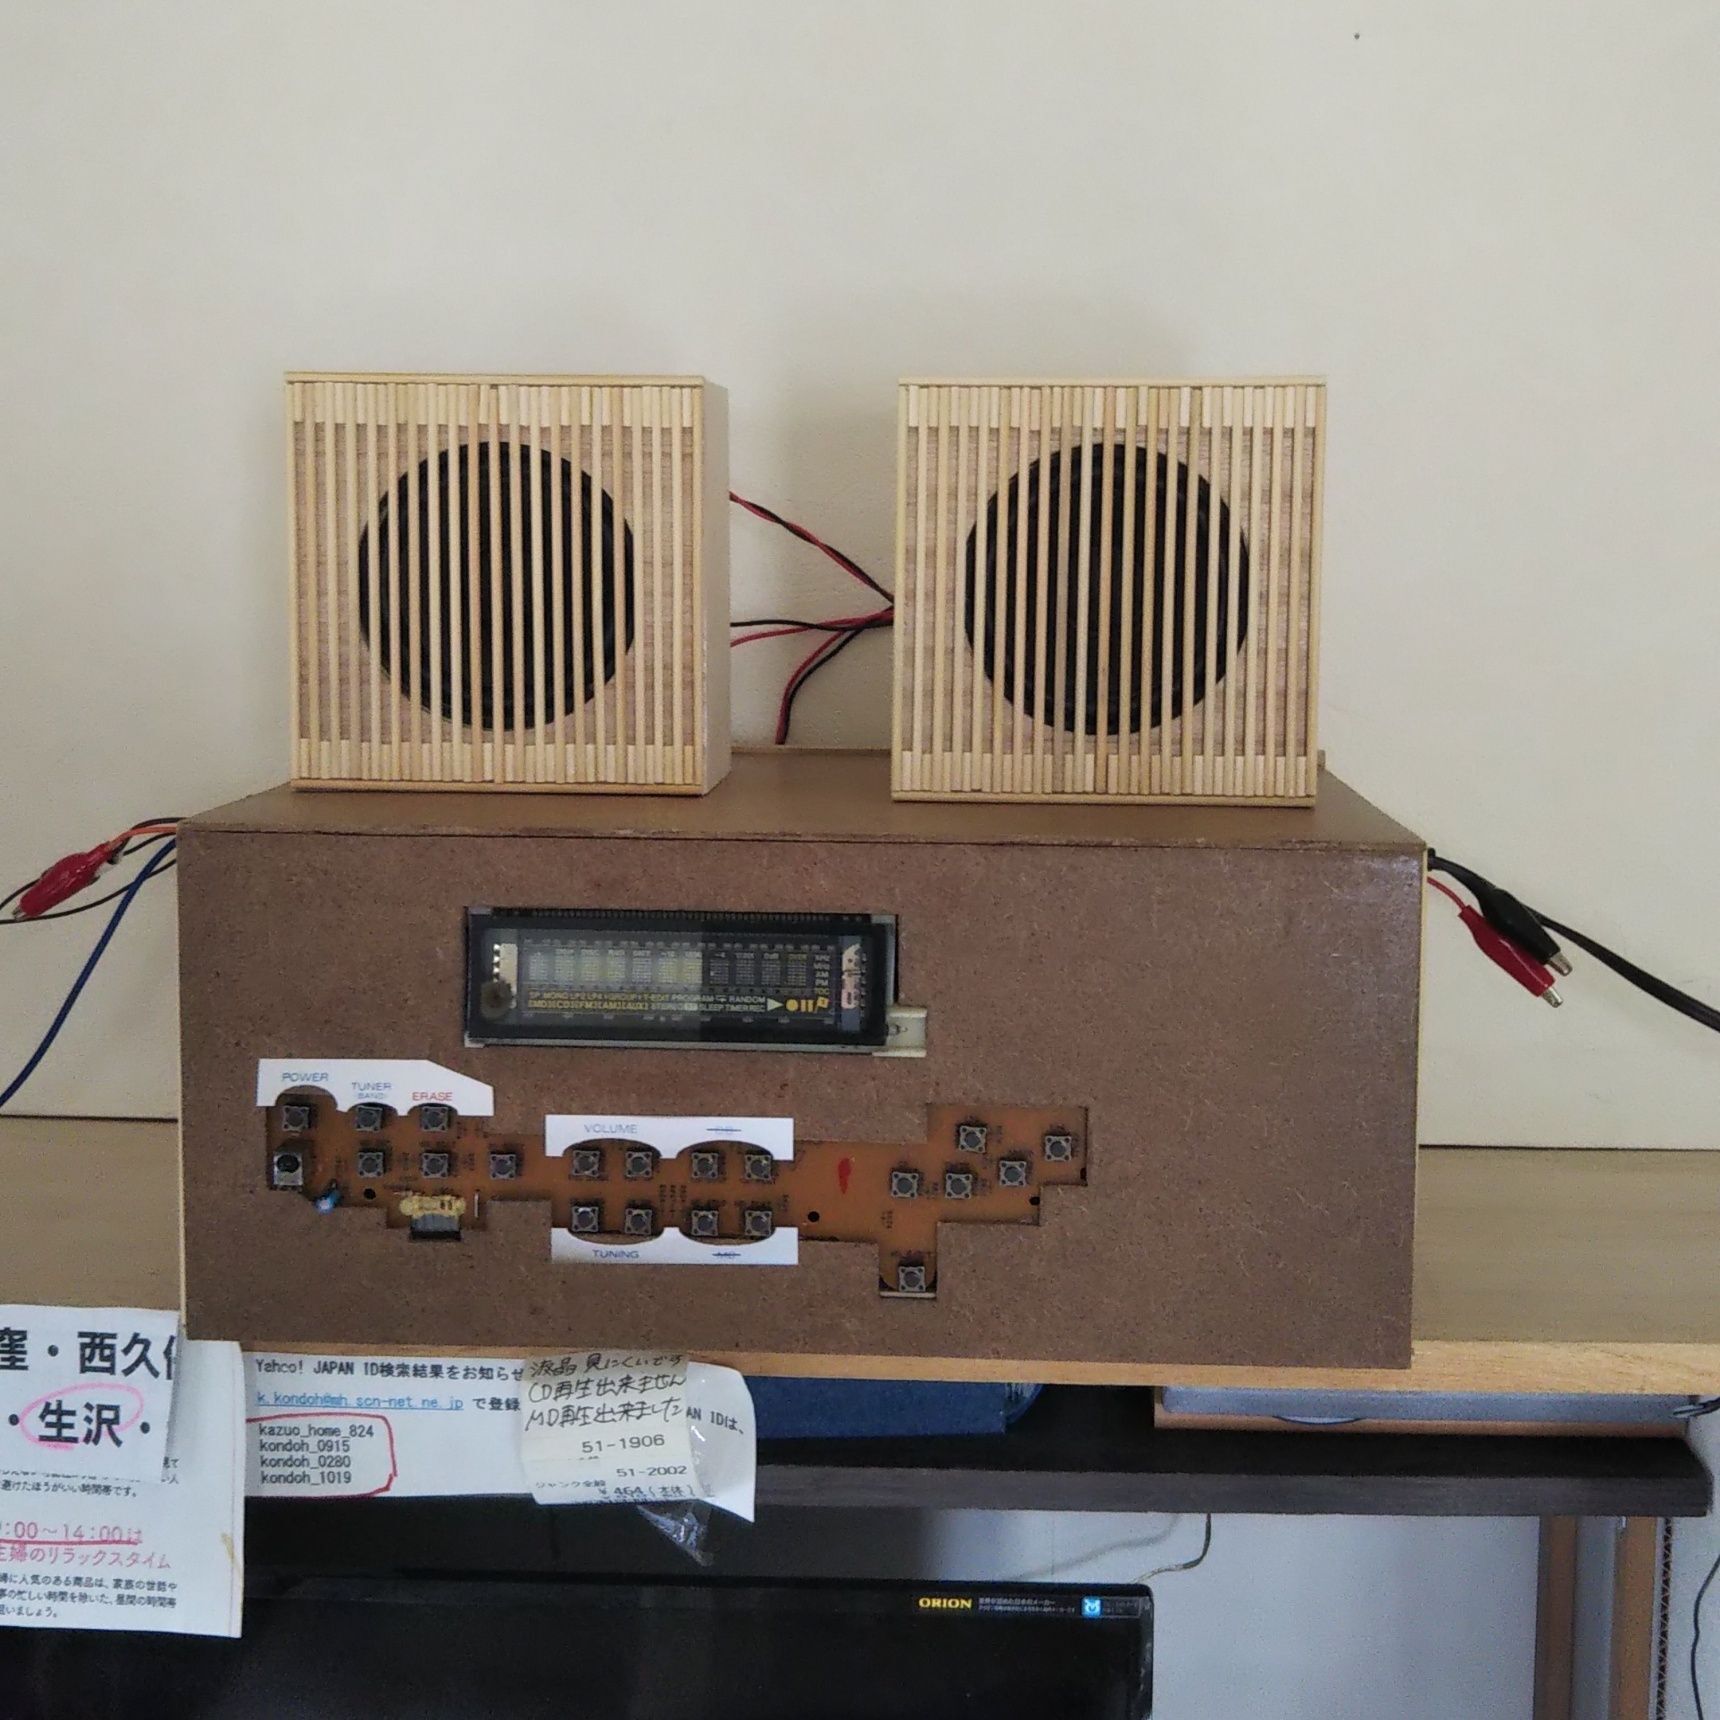 壊れたラジカセと100均材料で自作ラジオを作る 暮らしニスタ